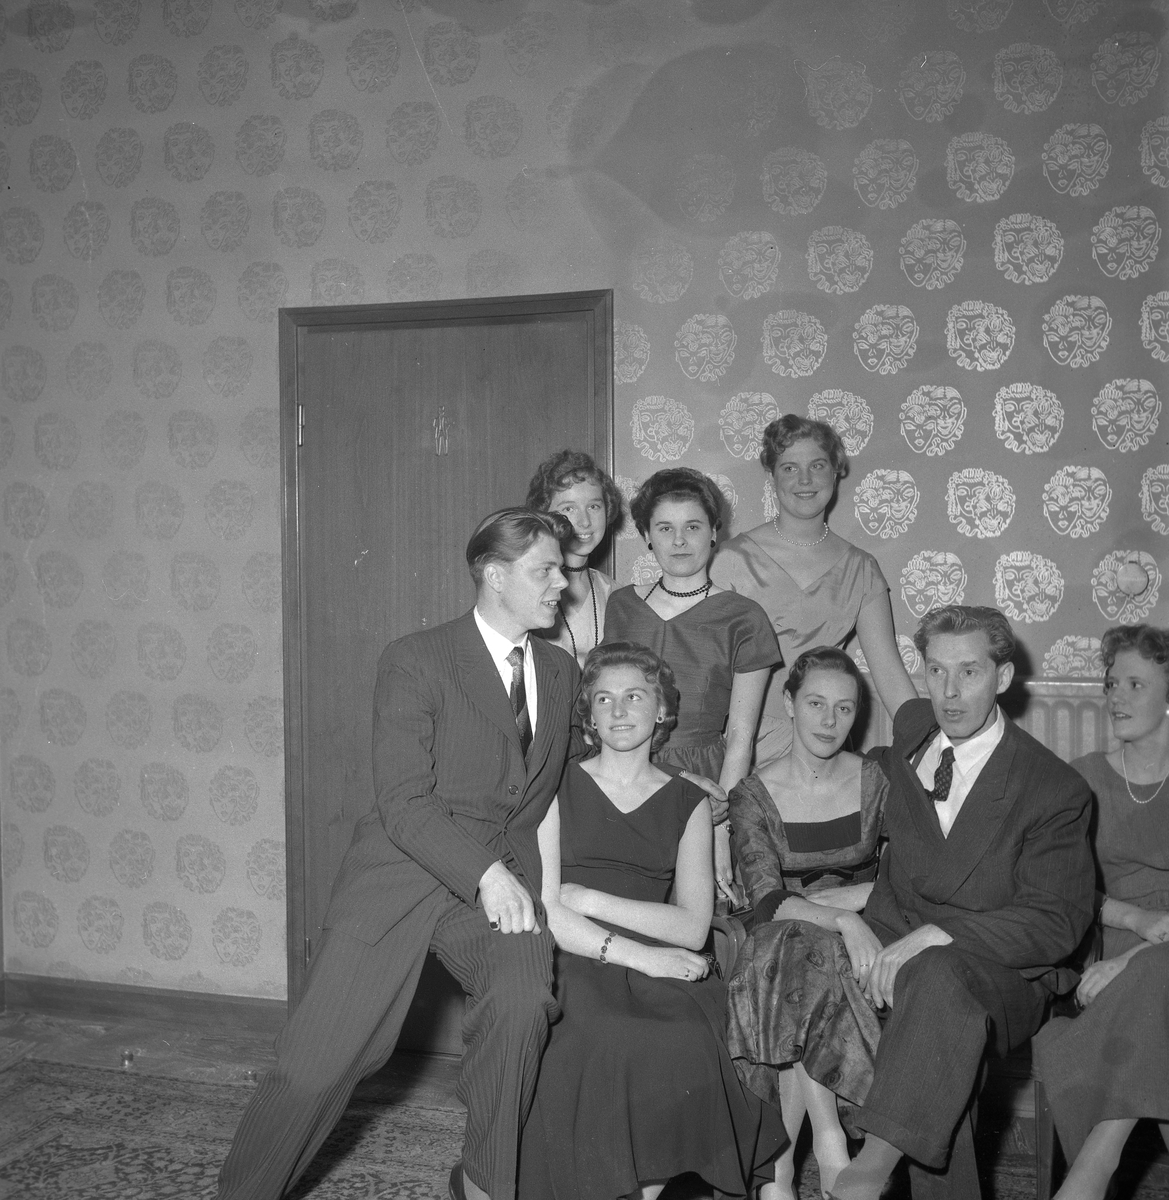 Telefonistfest på Stora Hotellet.
November 1956.